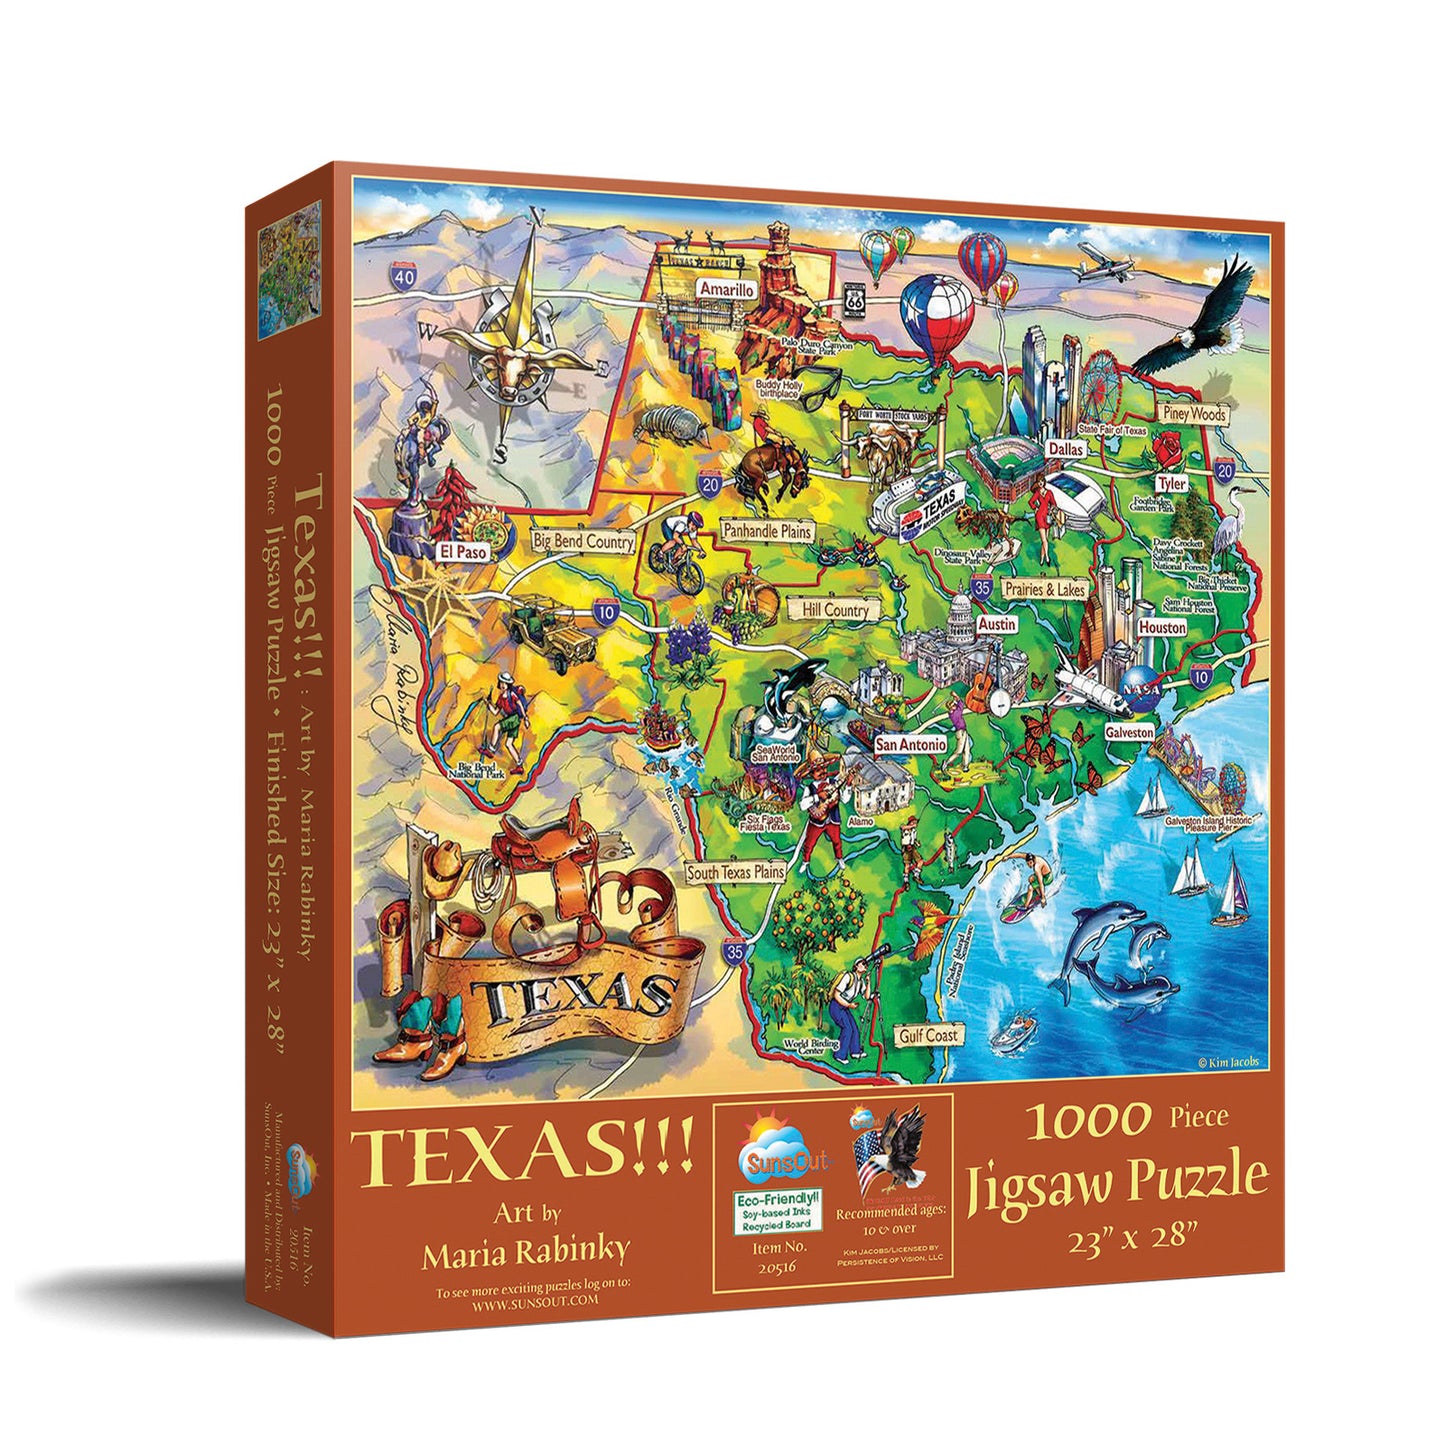 Texas!!! - 1000 Piece Jigsaw Puzzle